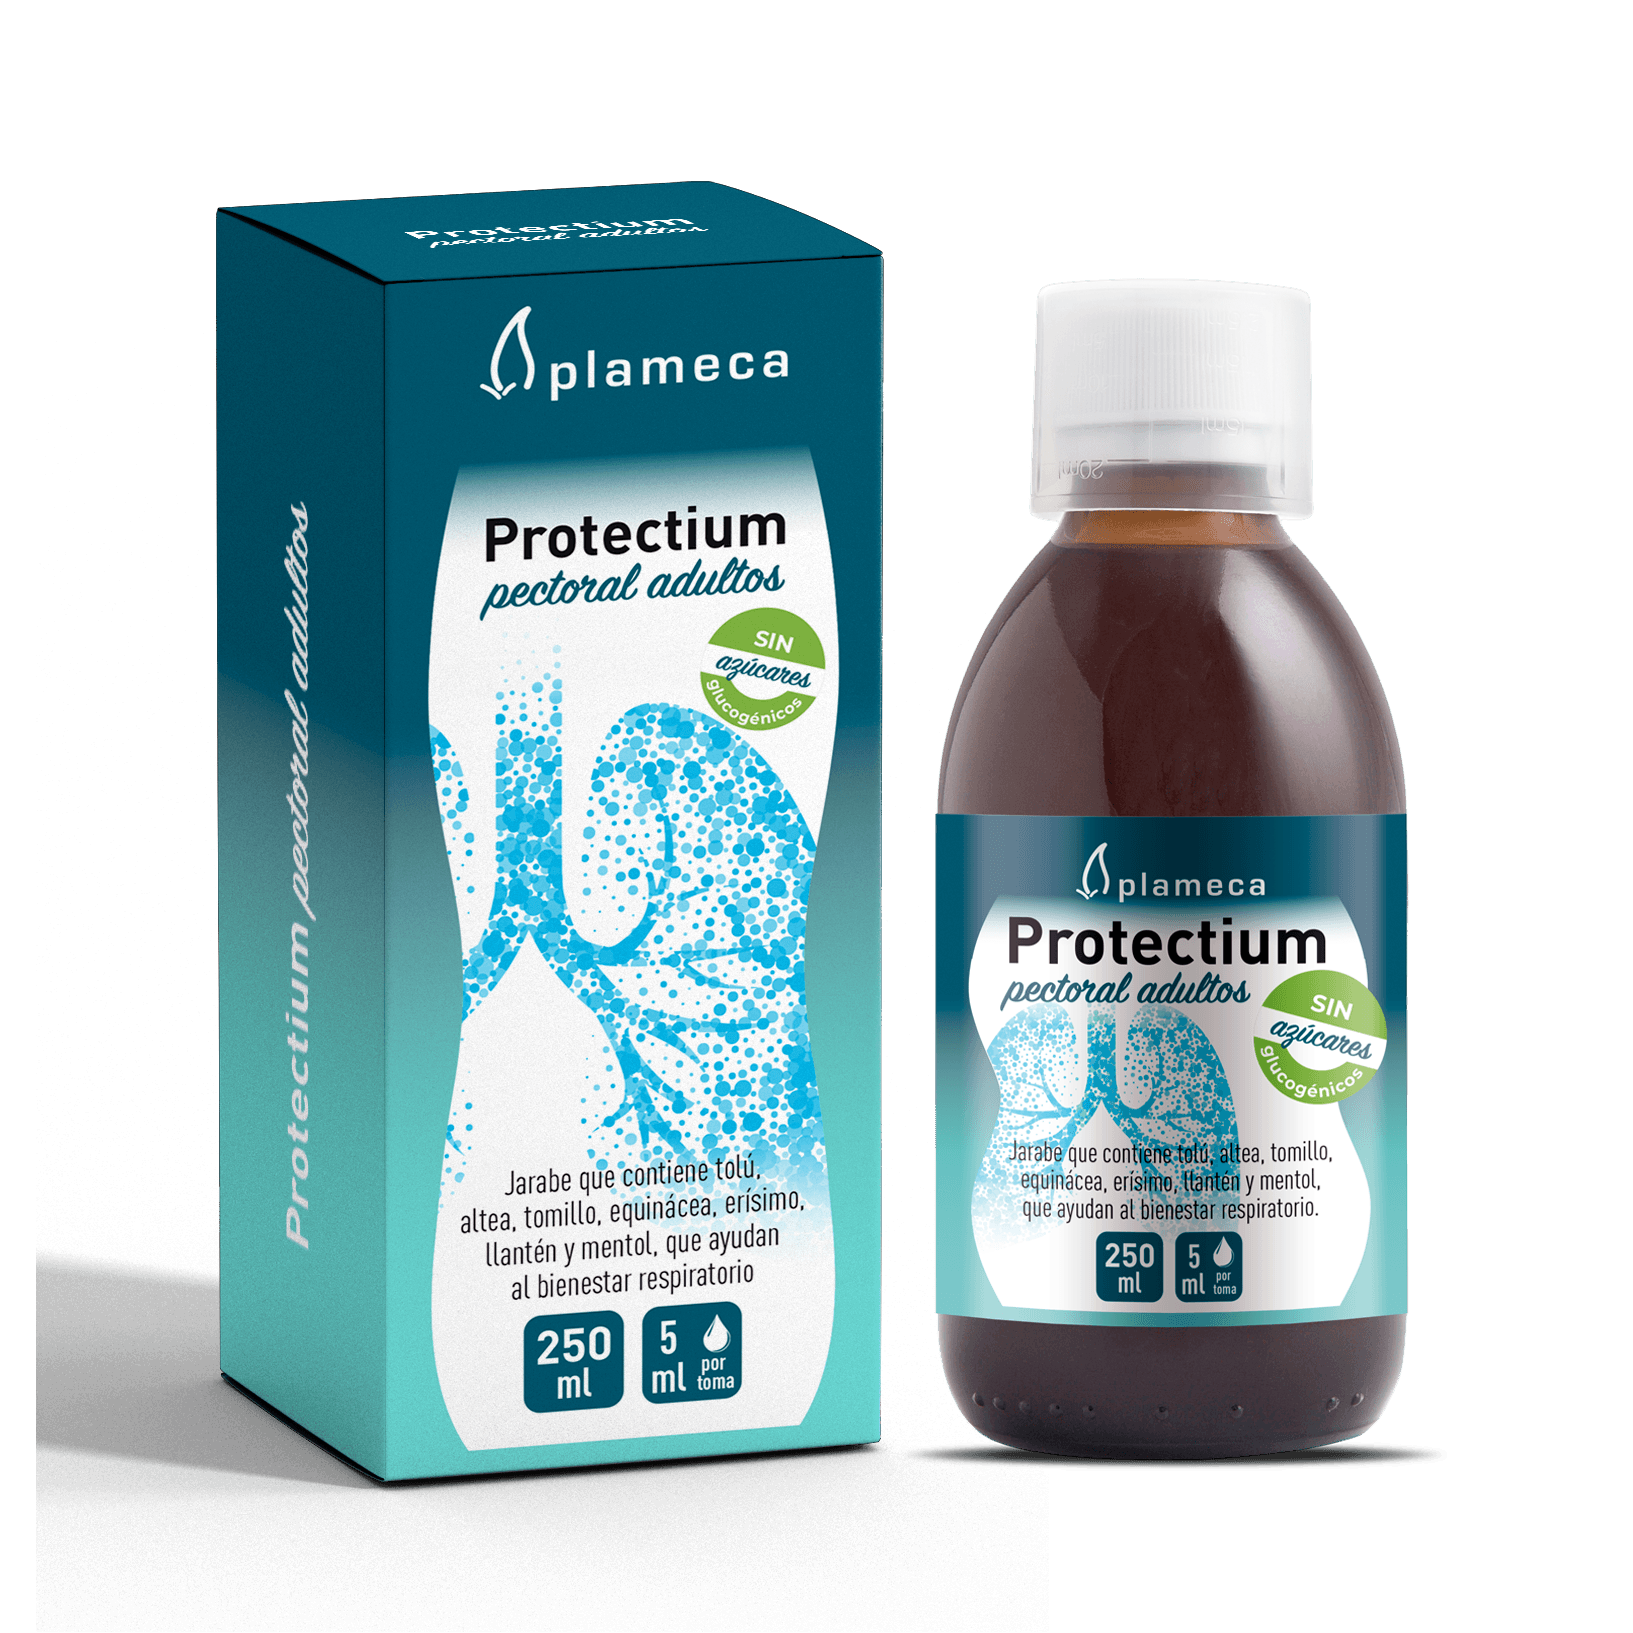 Protectium Pectoral Adultos 250 ml | Plameca - Dietetica Ferrer